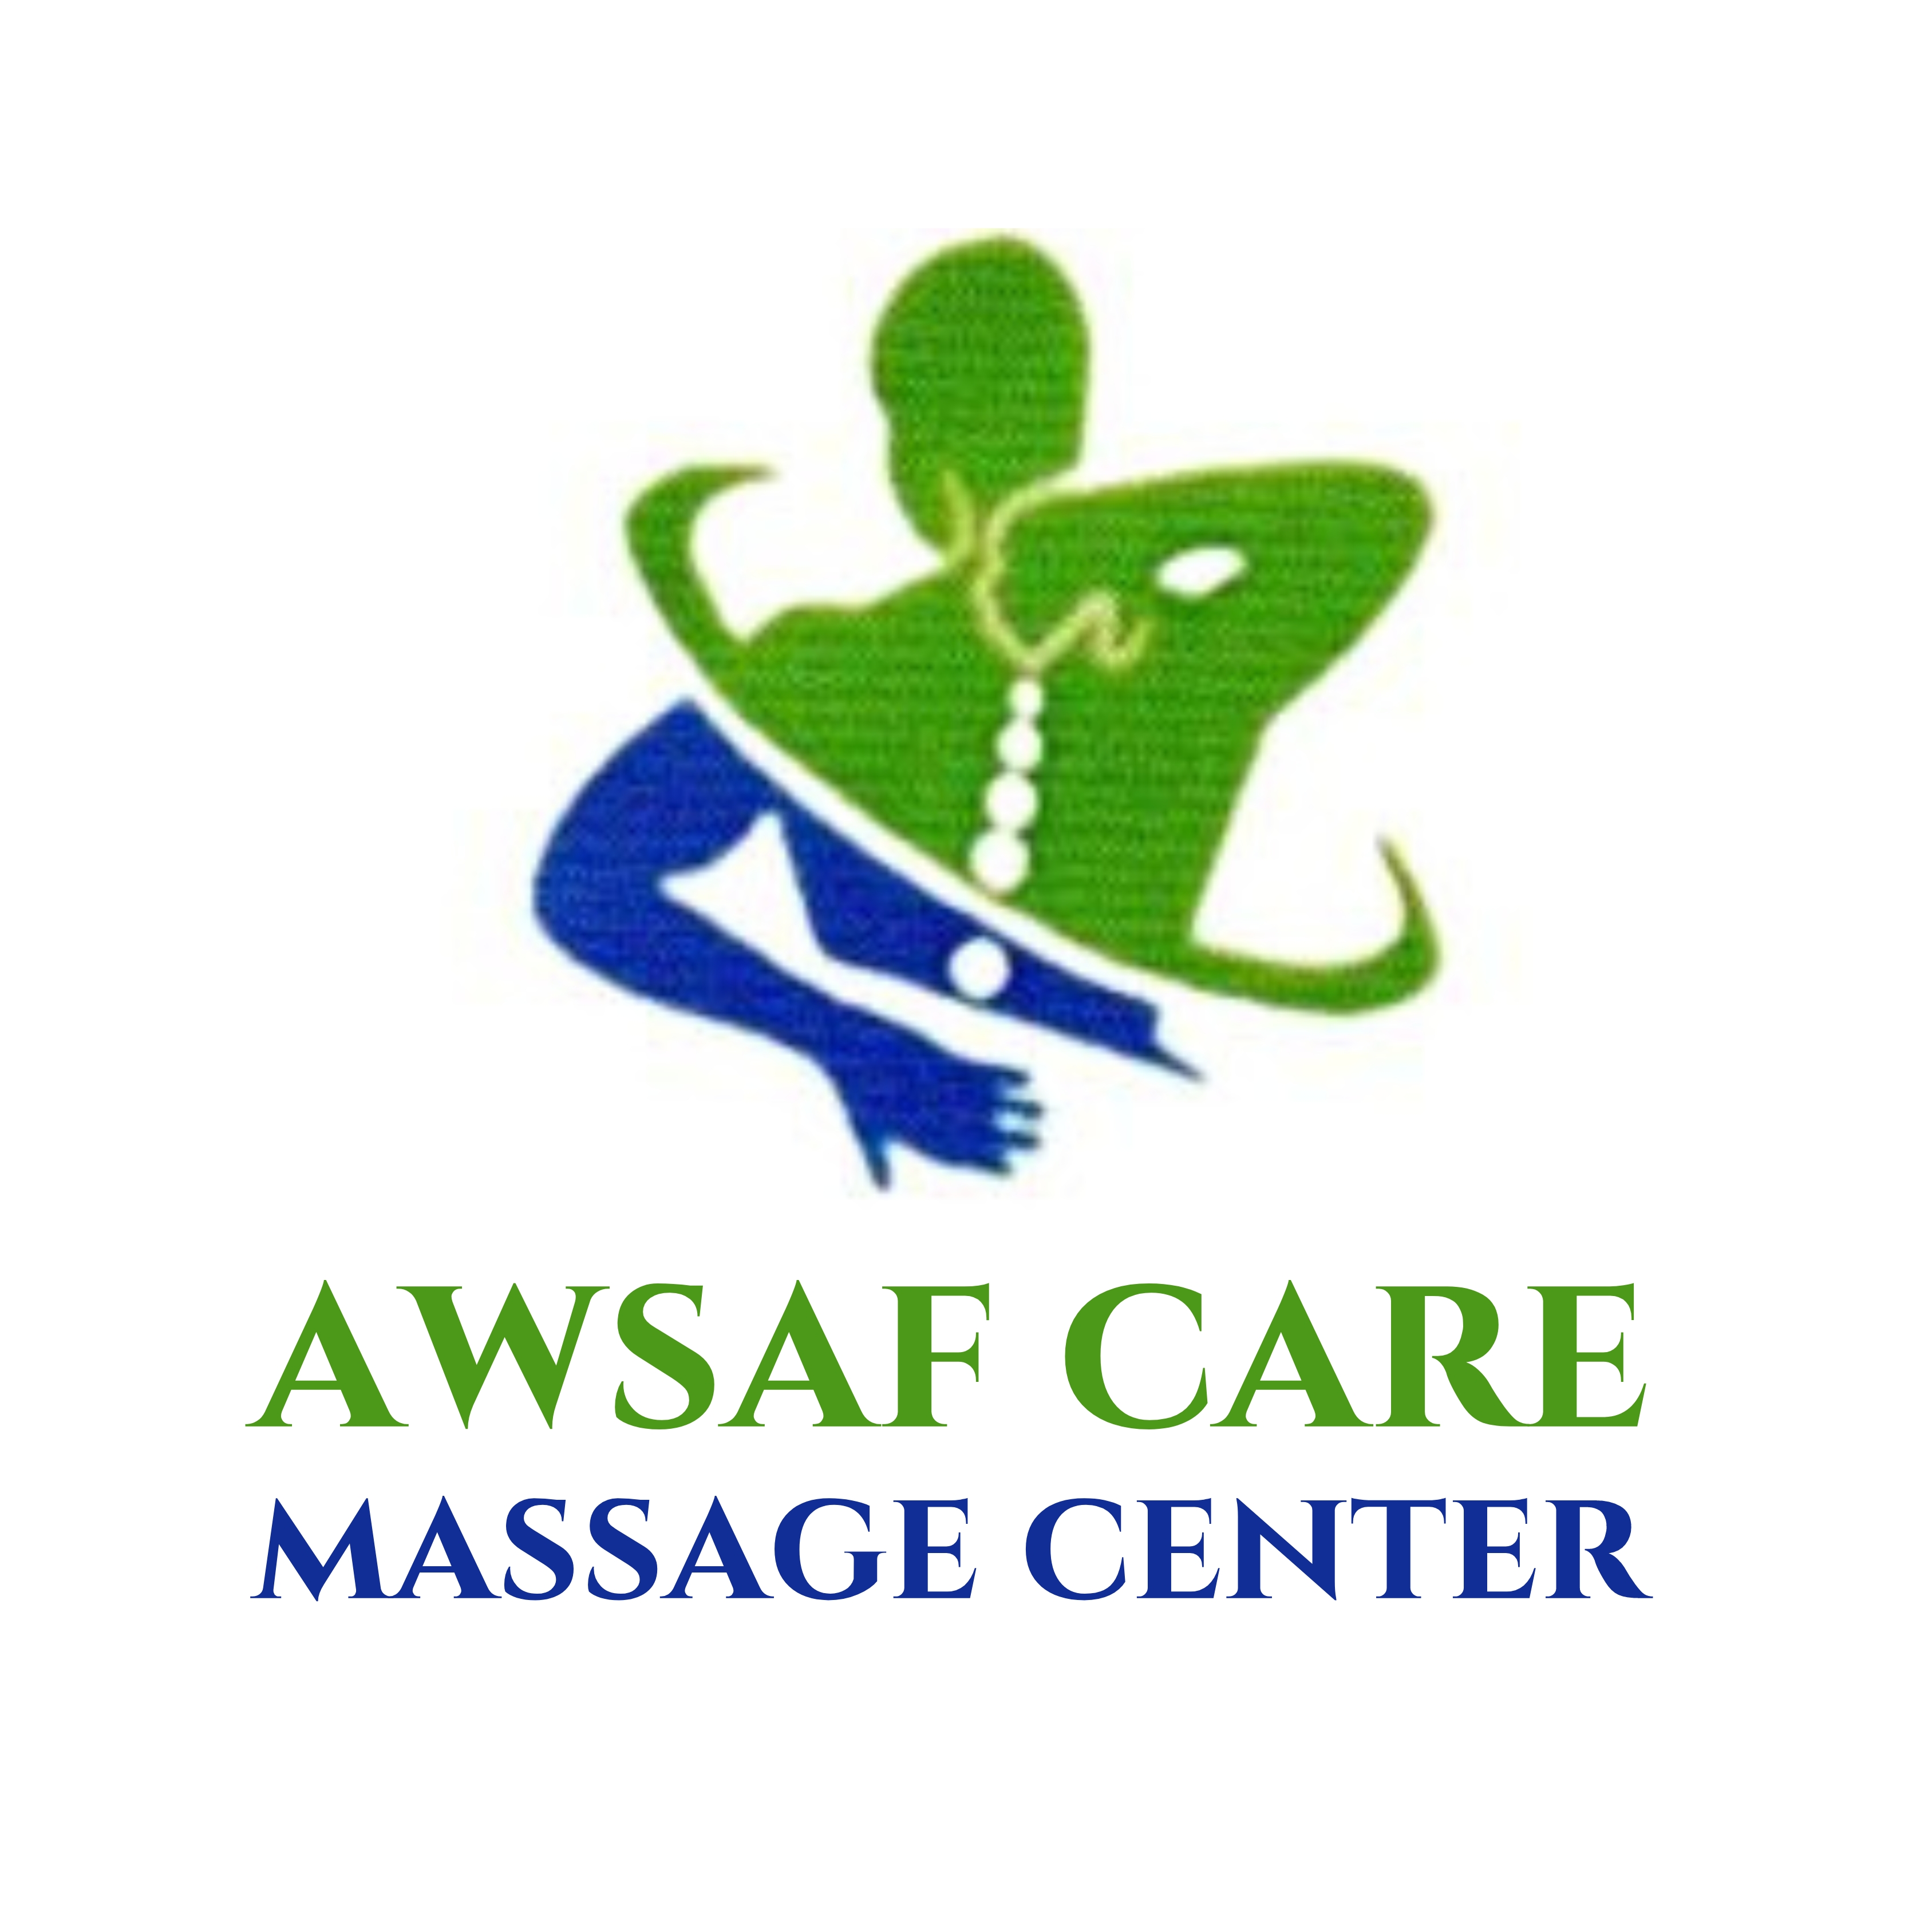 Awsaf Care Massage Center